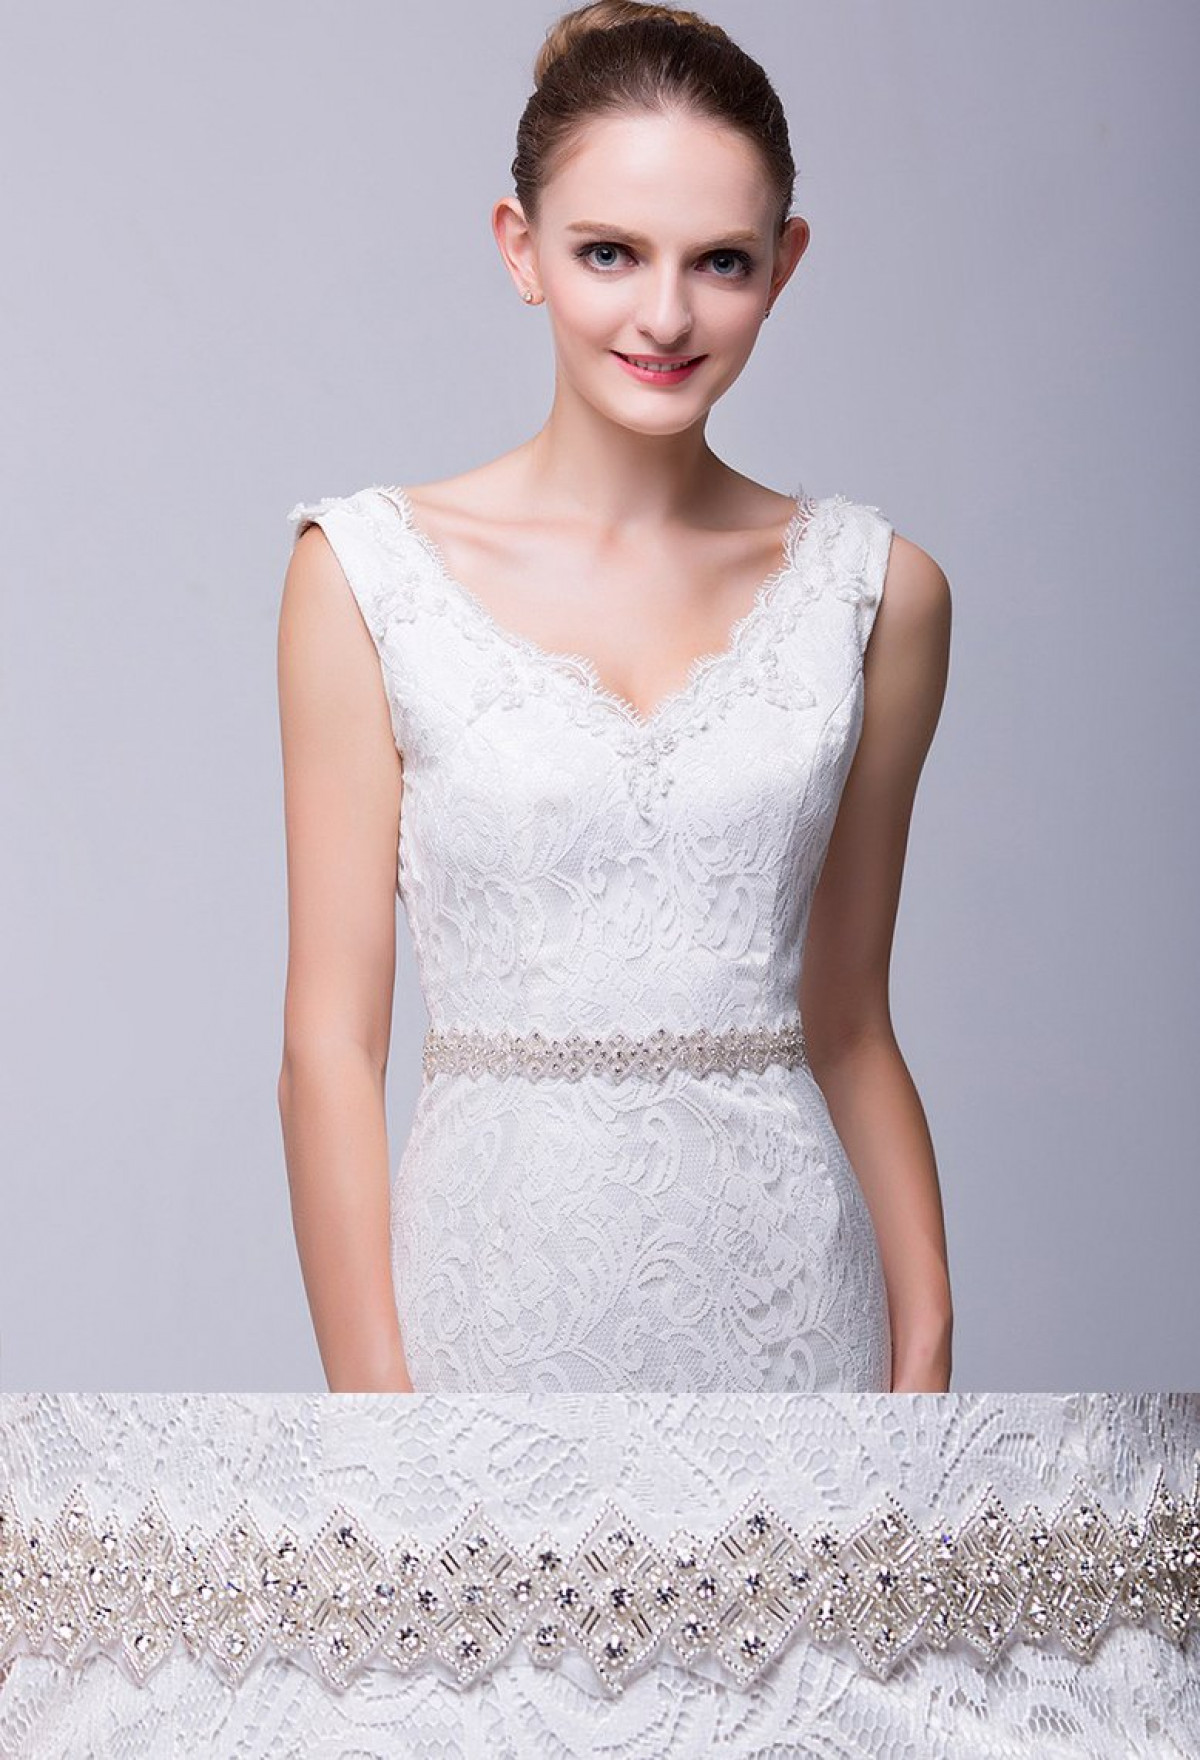 Diamante Bridal Trim Ceinture Robe de mariée ceinture strass Trim applique pour mariée